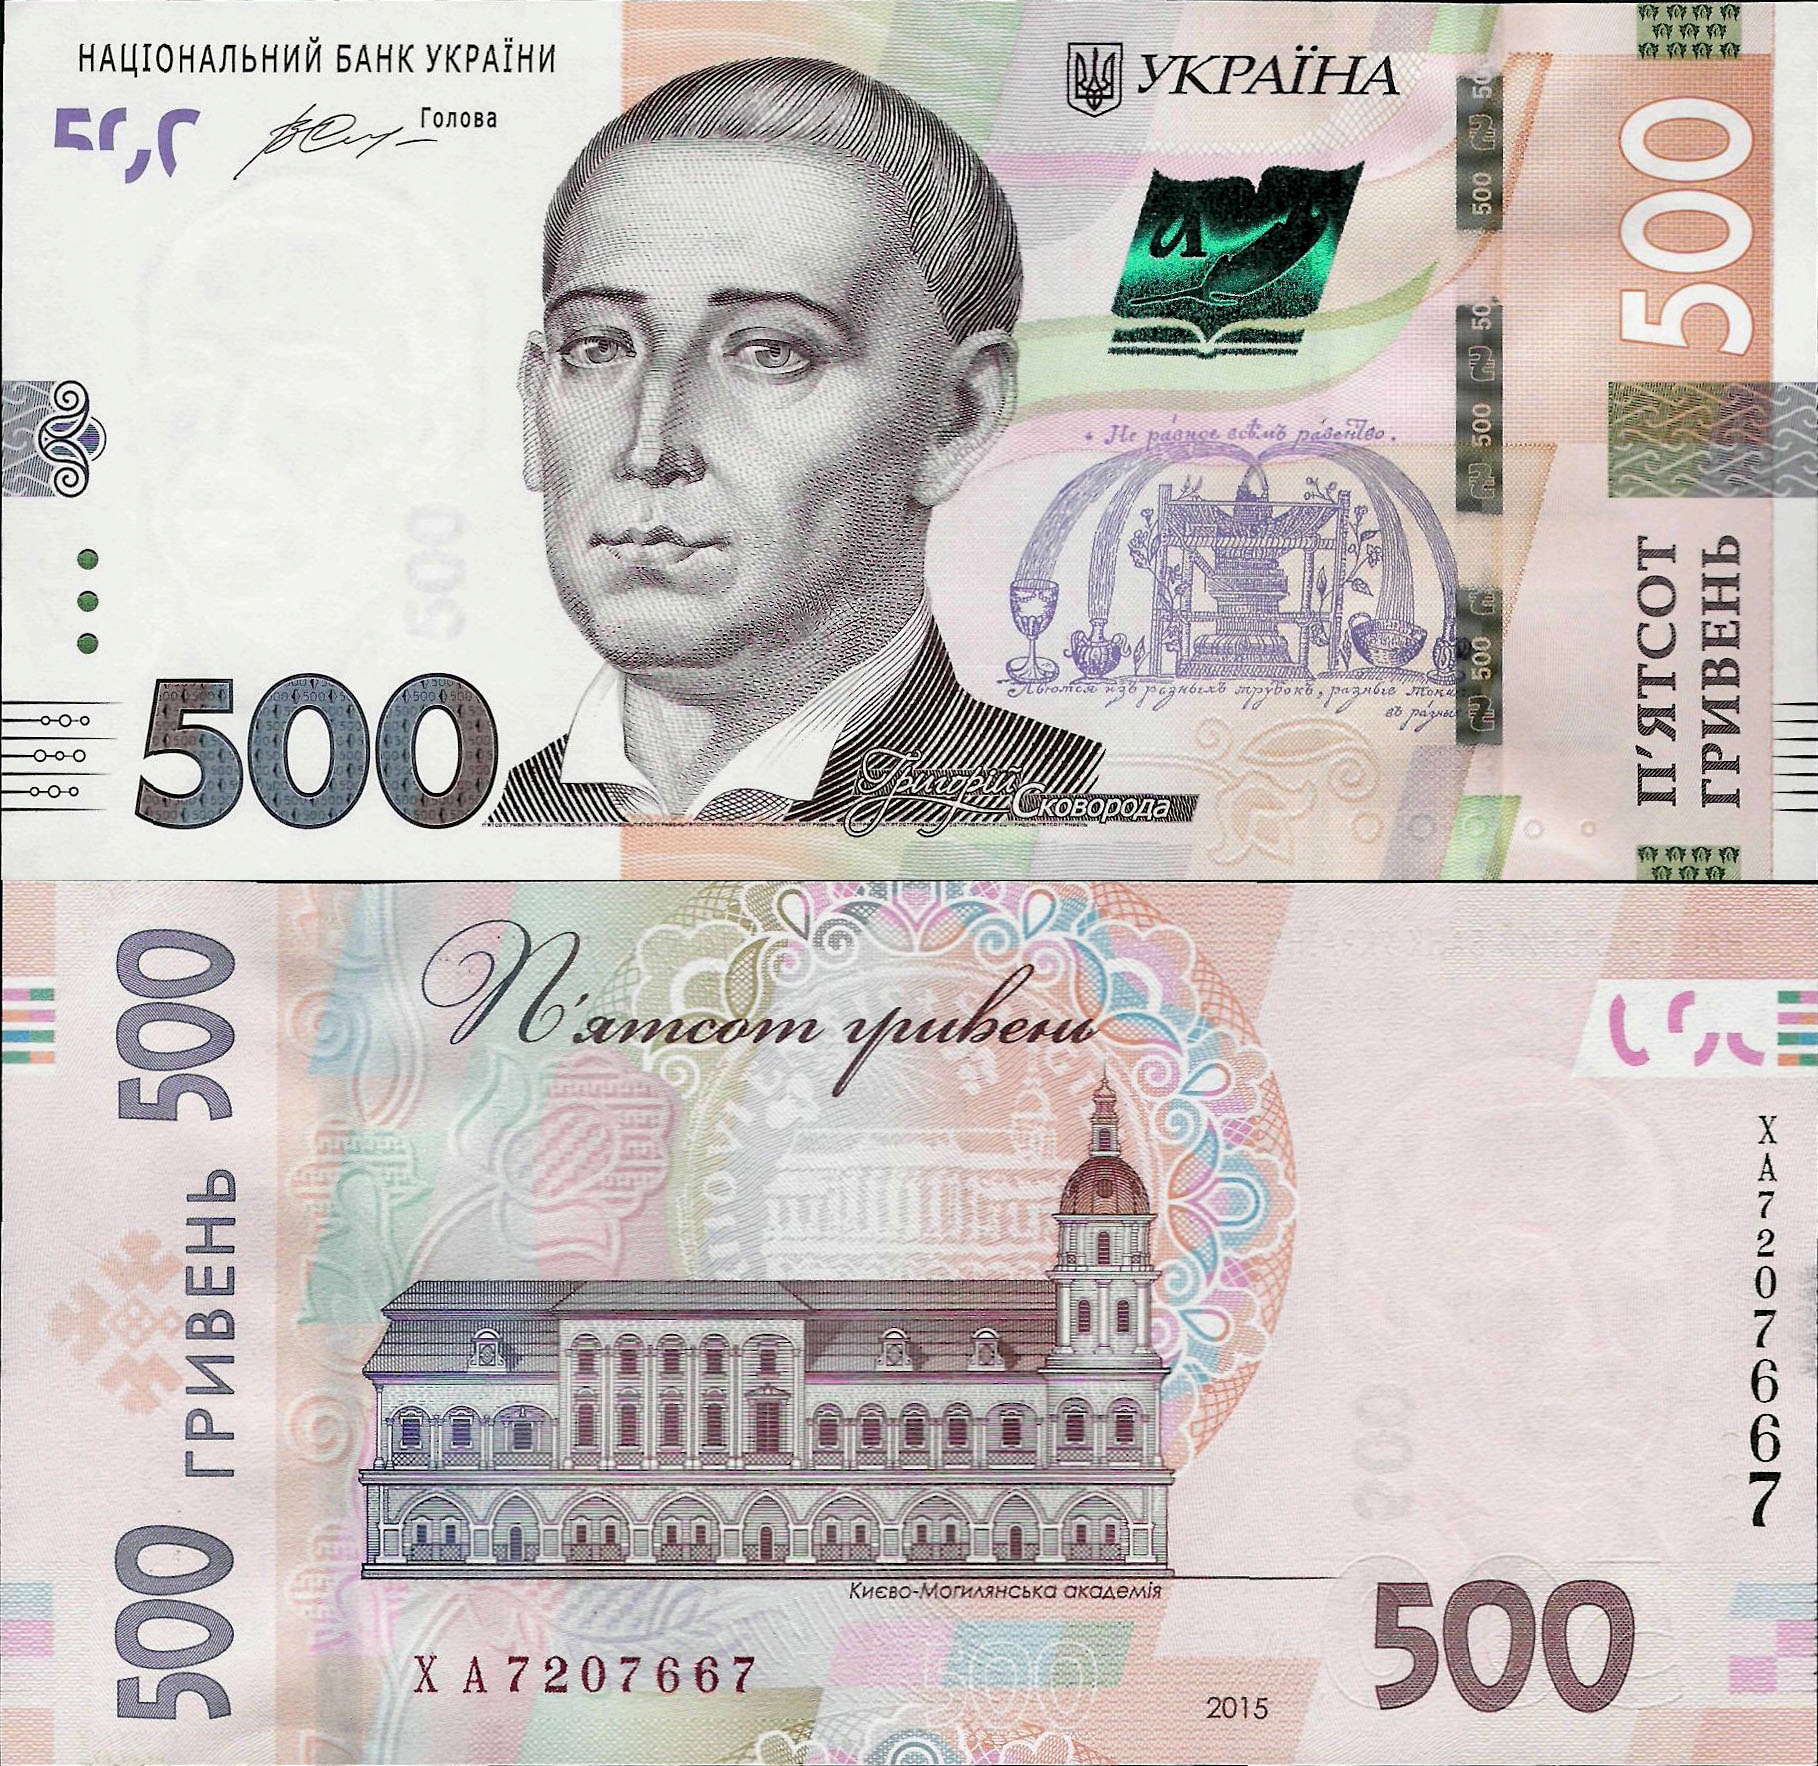 200000 рублей в гривнах. Банкнота Украины 500 гривен. 500 Гривен купюра.